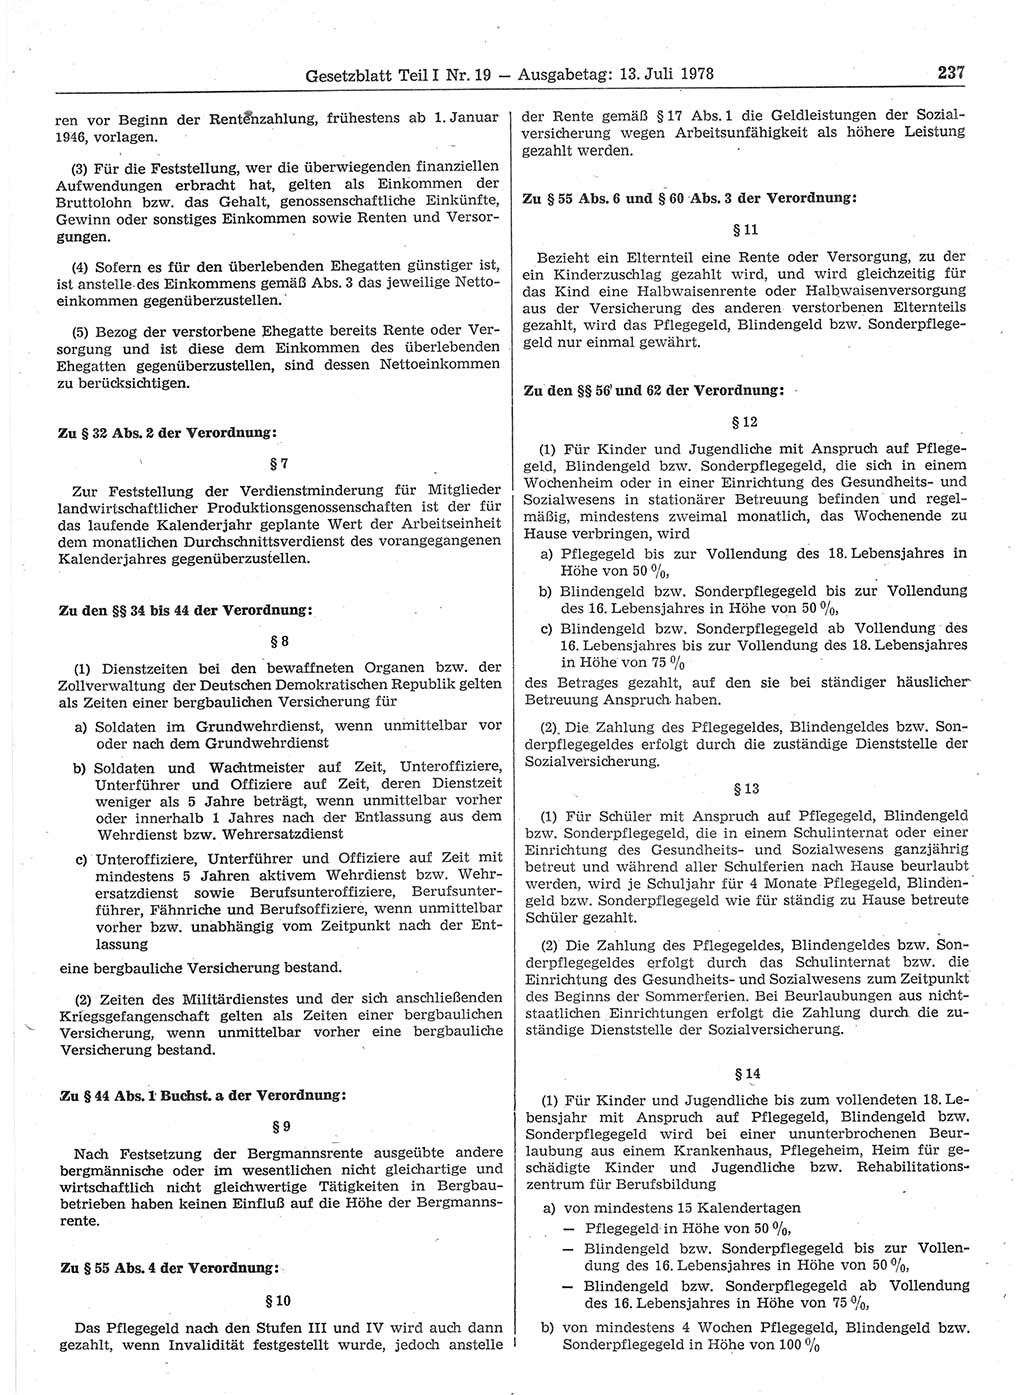 Gesetzblatt (GBl.) der Deutschen Demokratischen Republik (DDR) Teil Ⅰ 1978, Seite 237 (GBl. DDR Ⅰ 1978, S. 237)